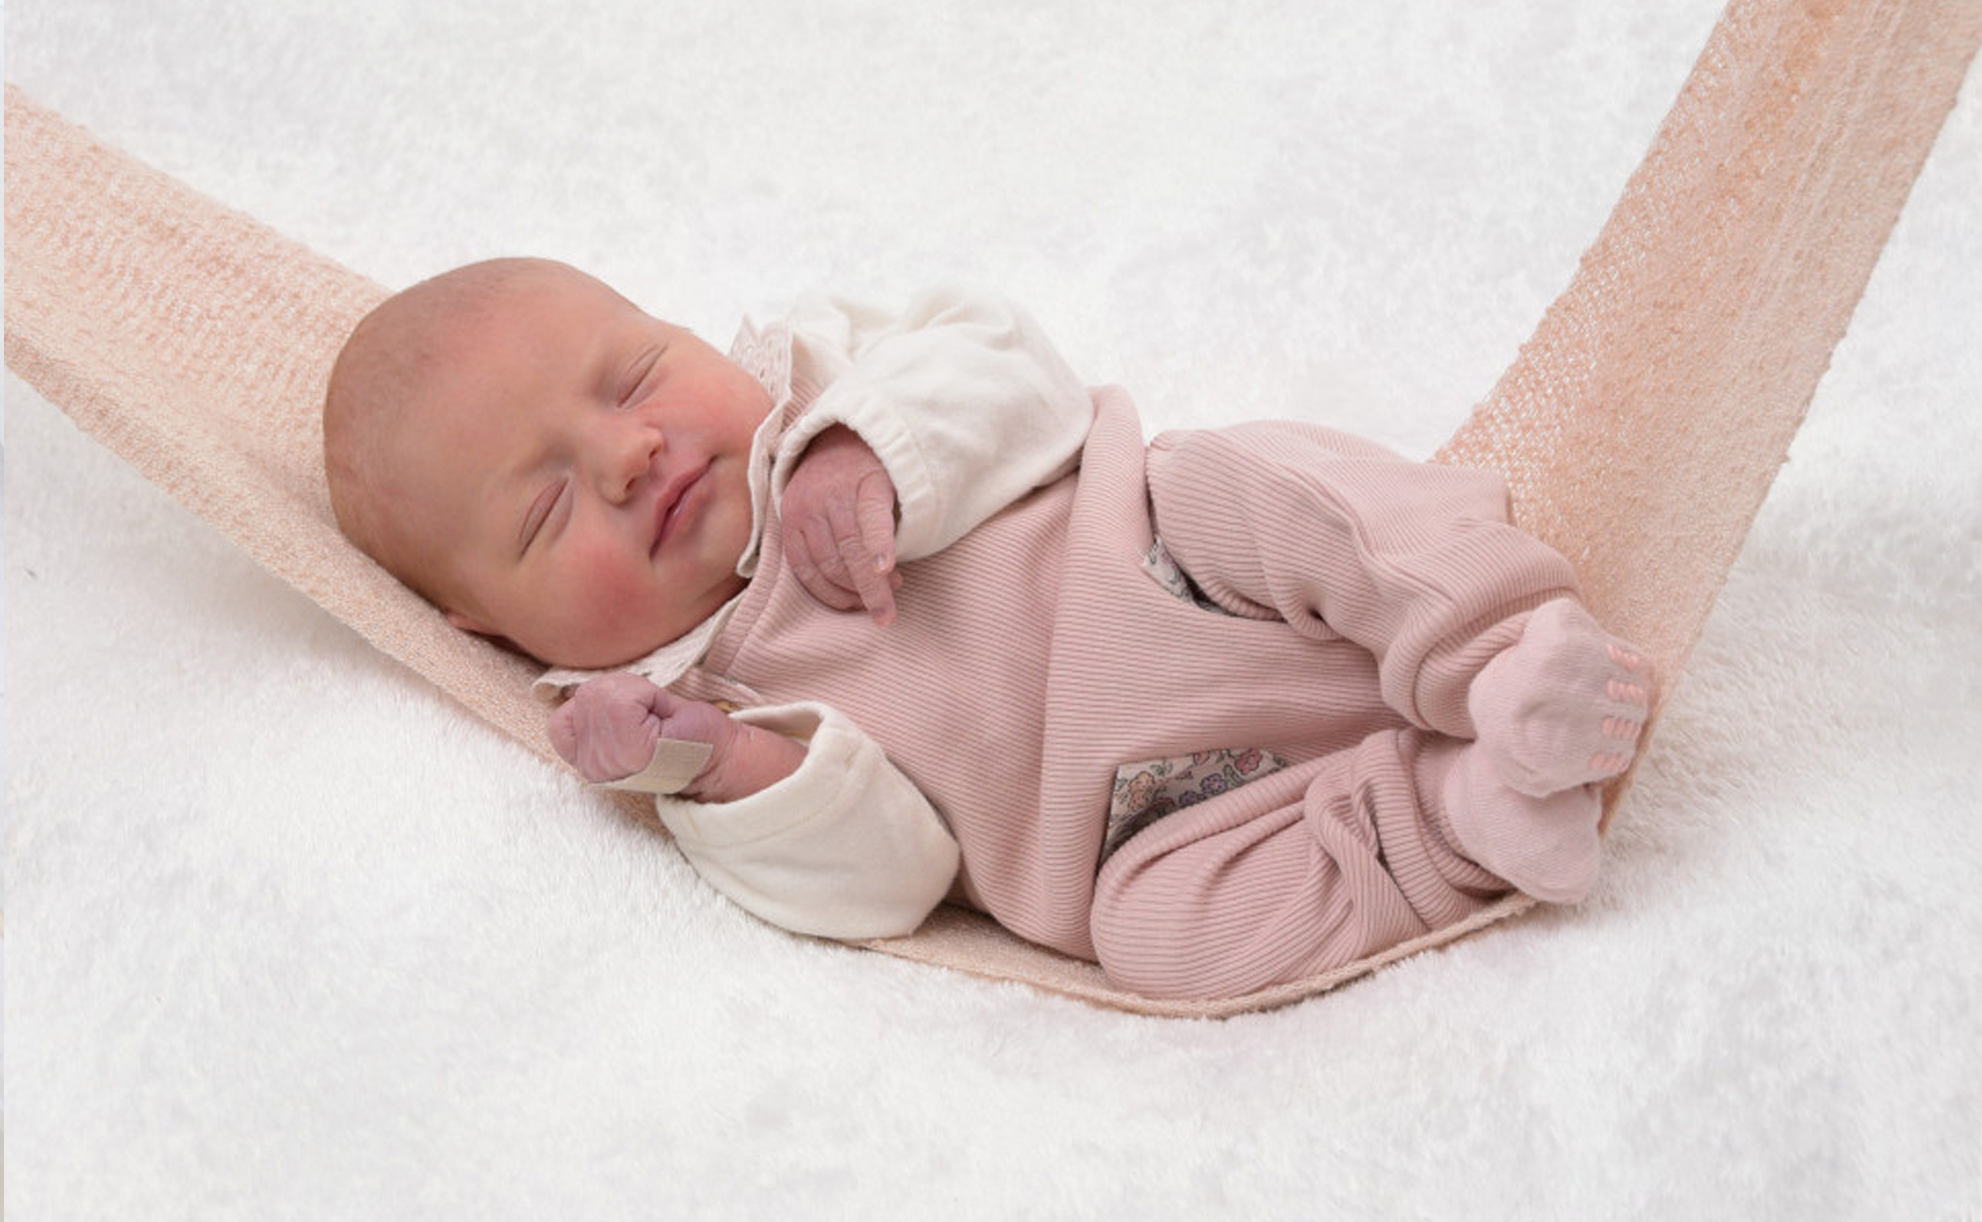 Bild von einem Neugeborenen